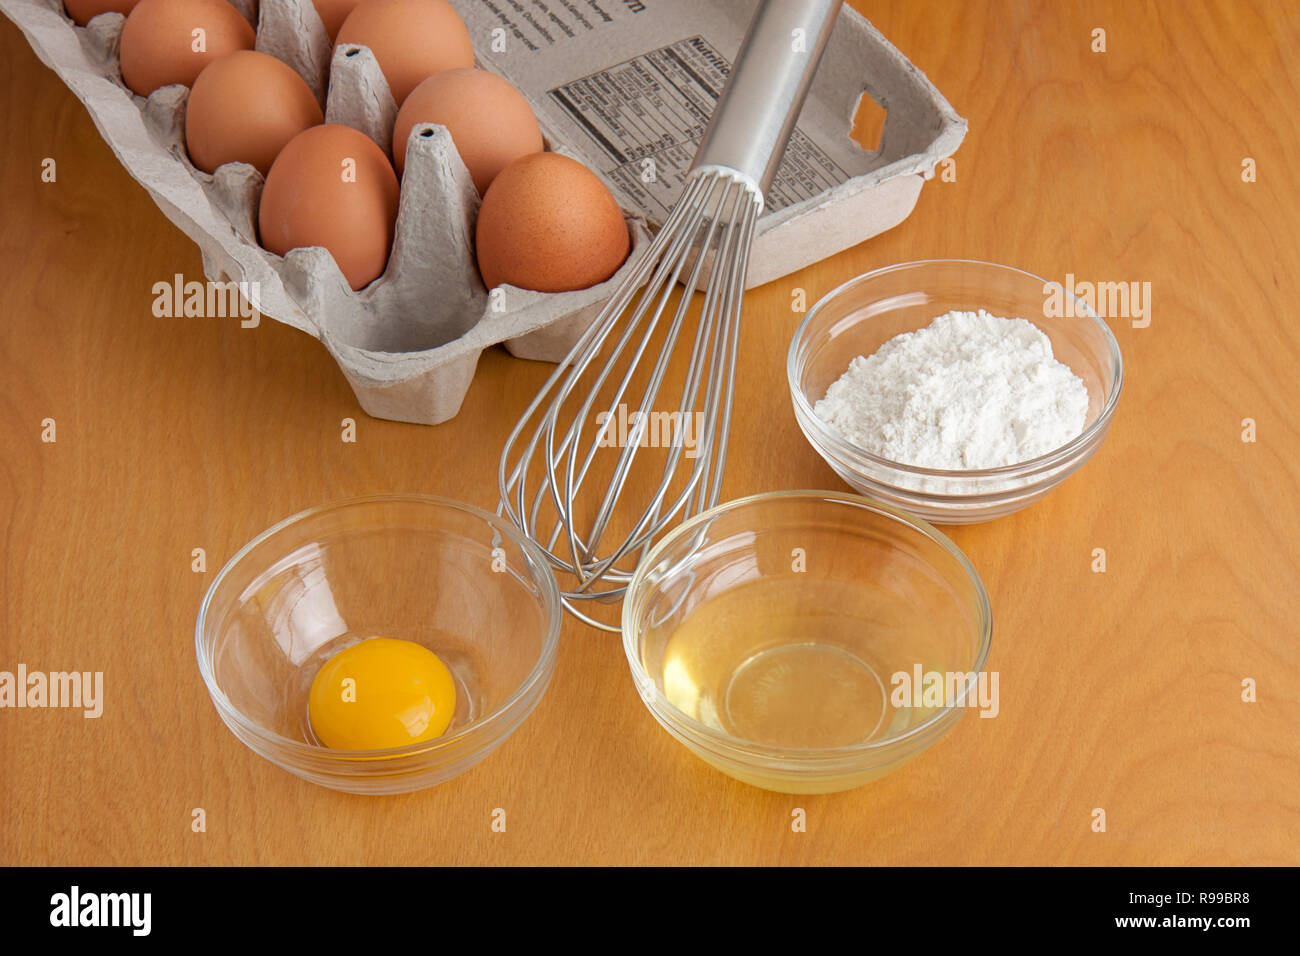 Huevos resquebrajados separados en recipientes de cristal, la harina en un tazón de vidrio, un batidor, plata y cartón de huevos todo sobre una tabla para cortar. Foto de stock